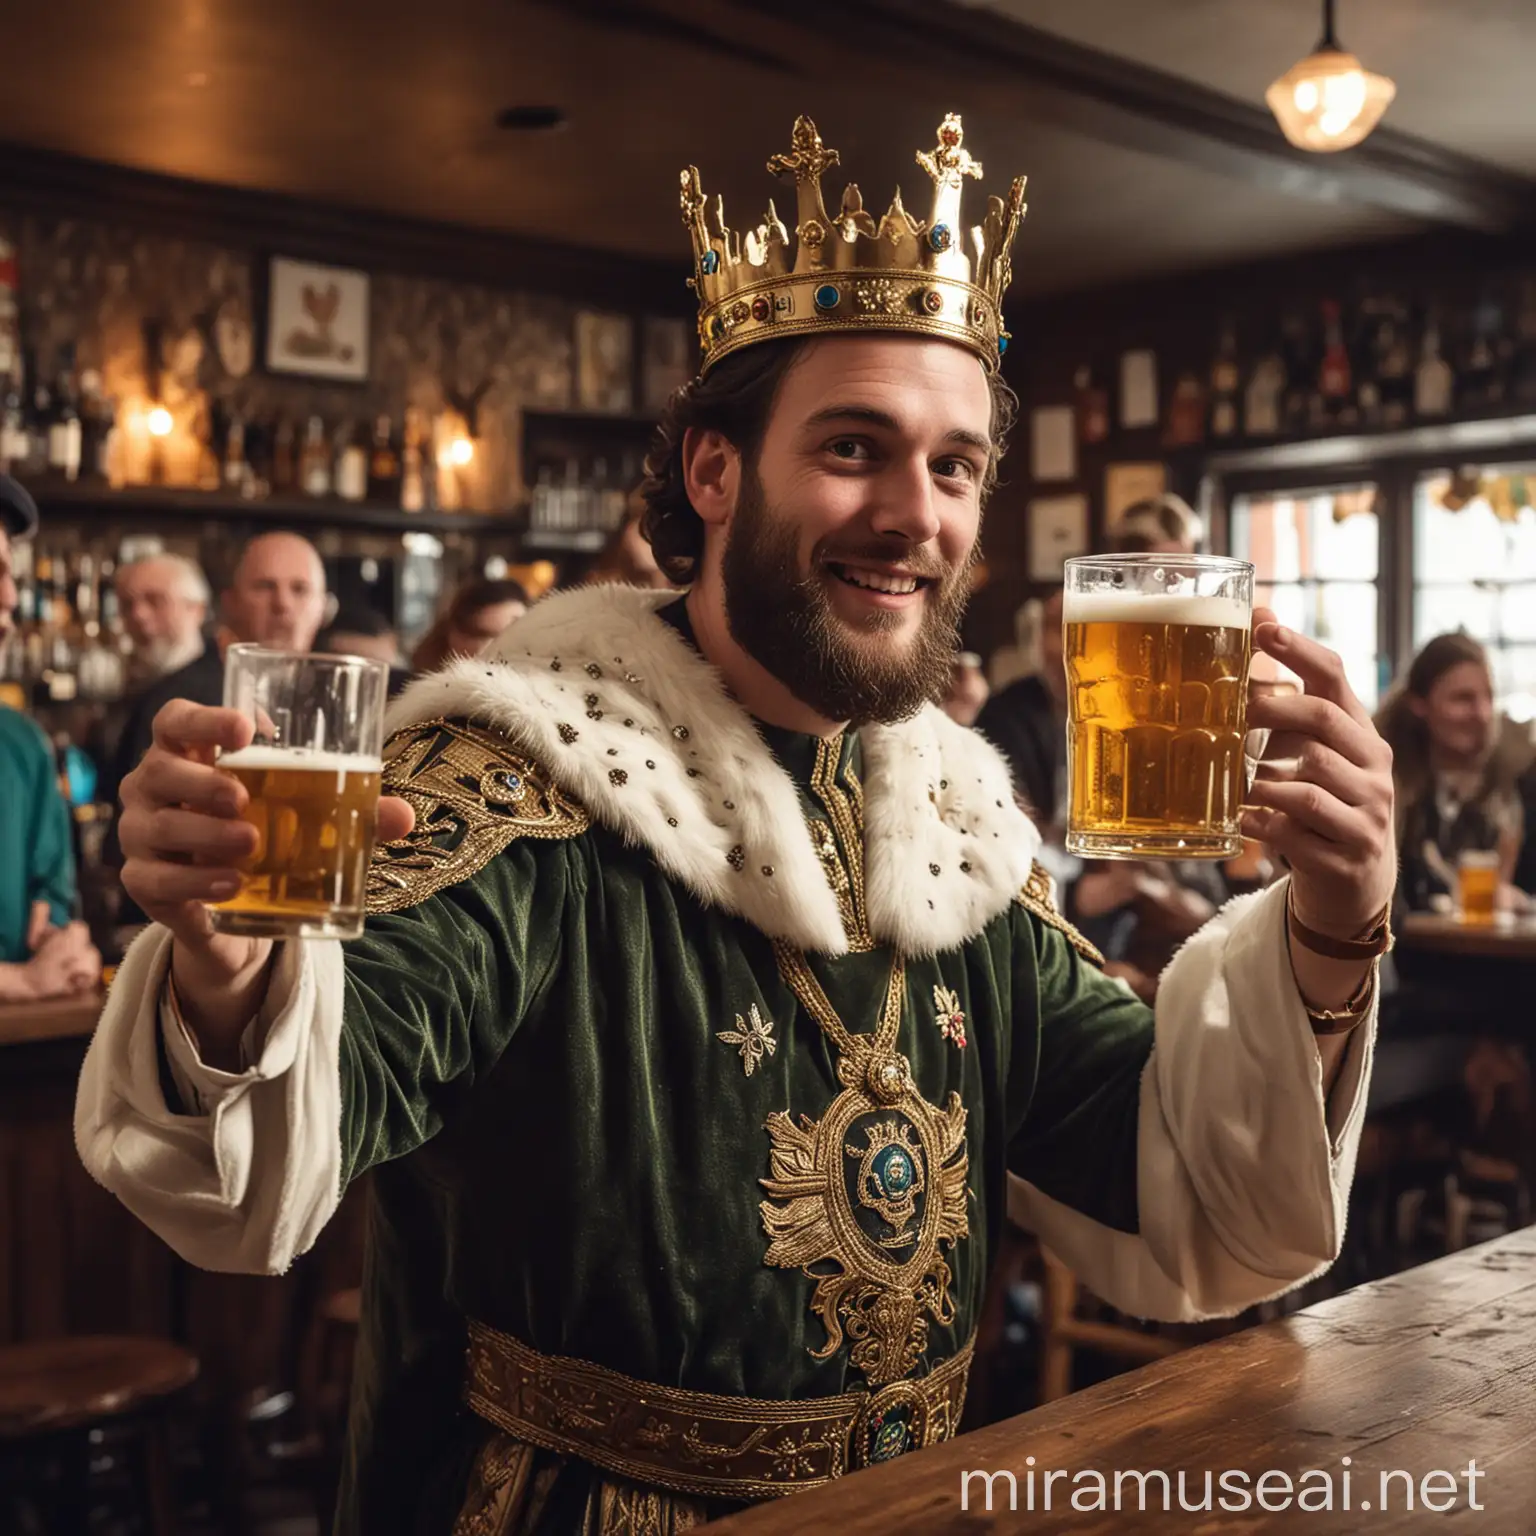 Proud King Enjoying Beer at Pub